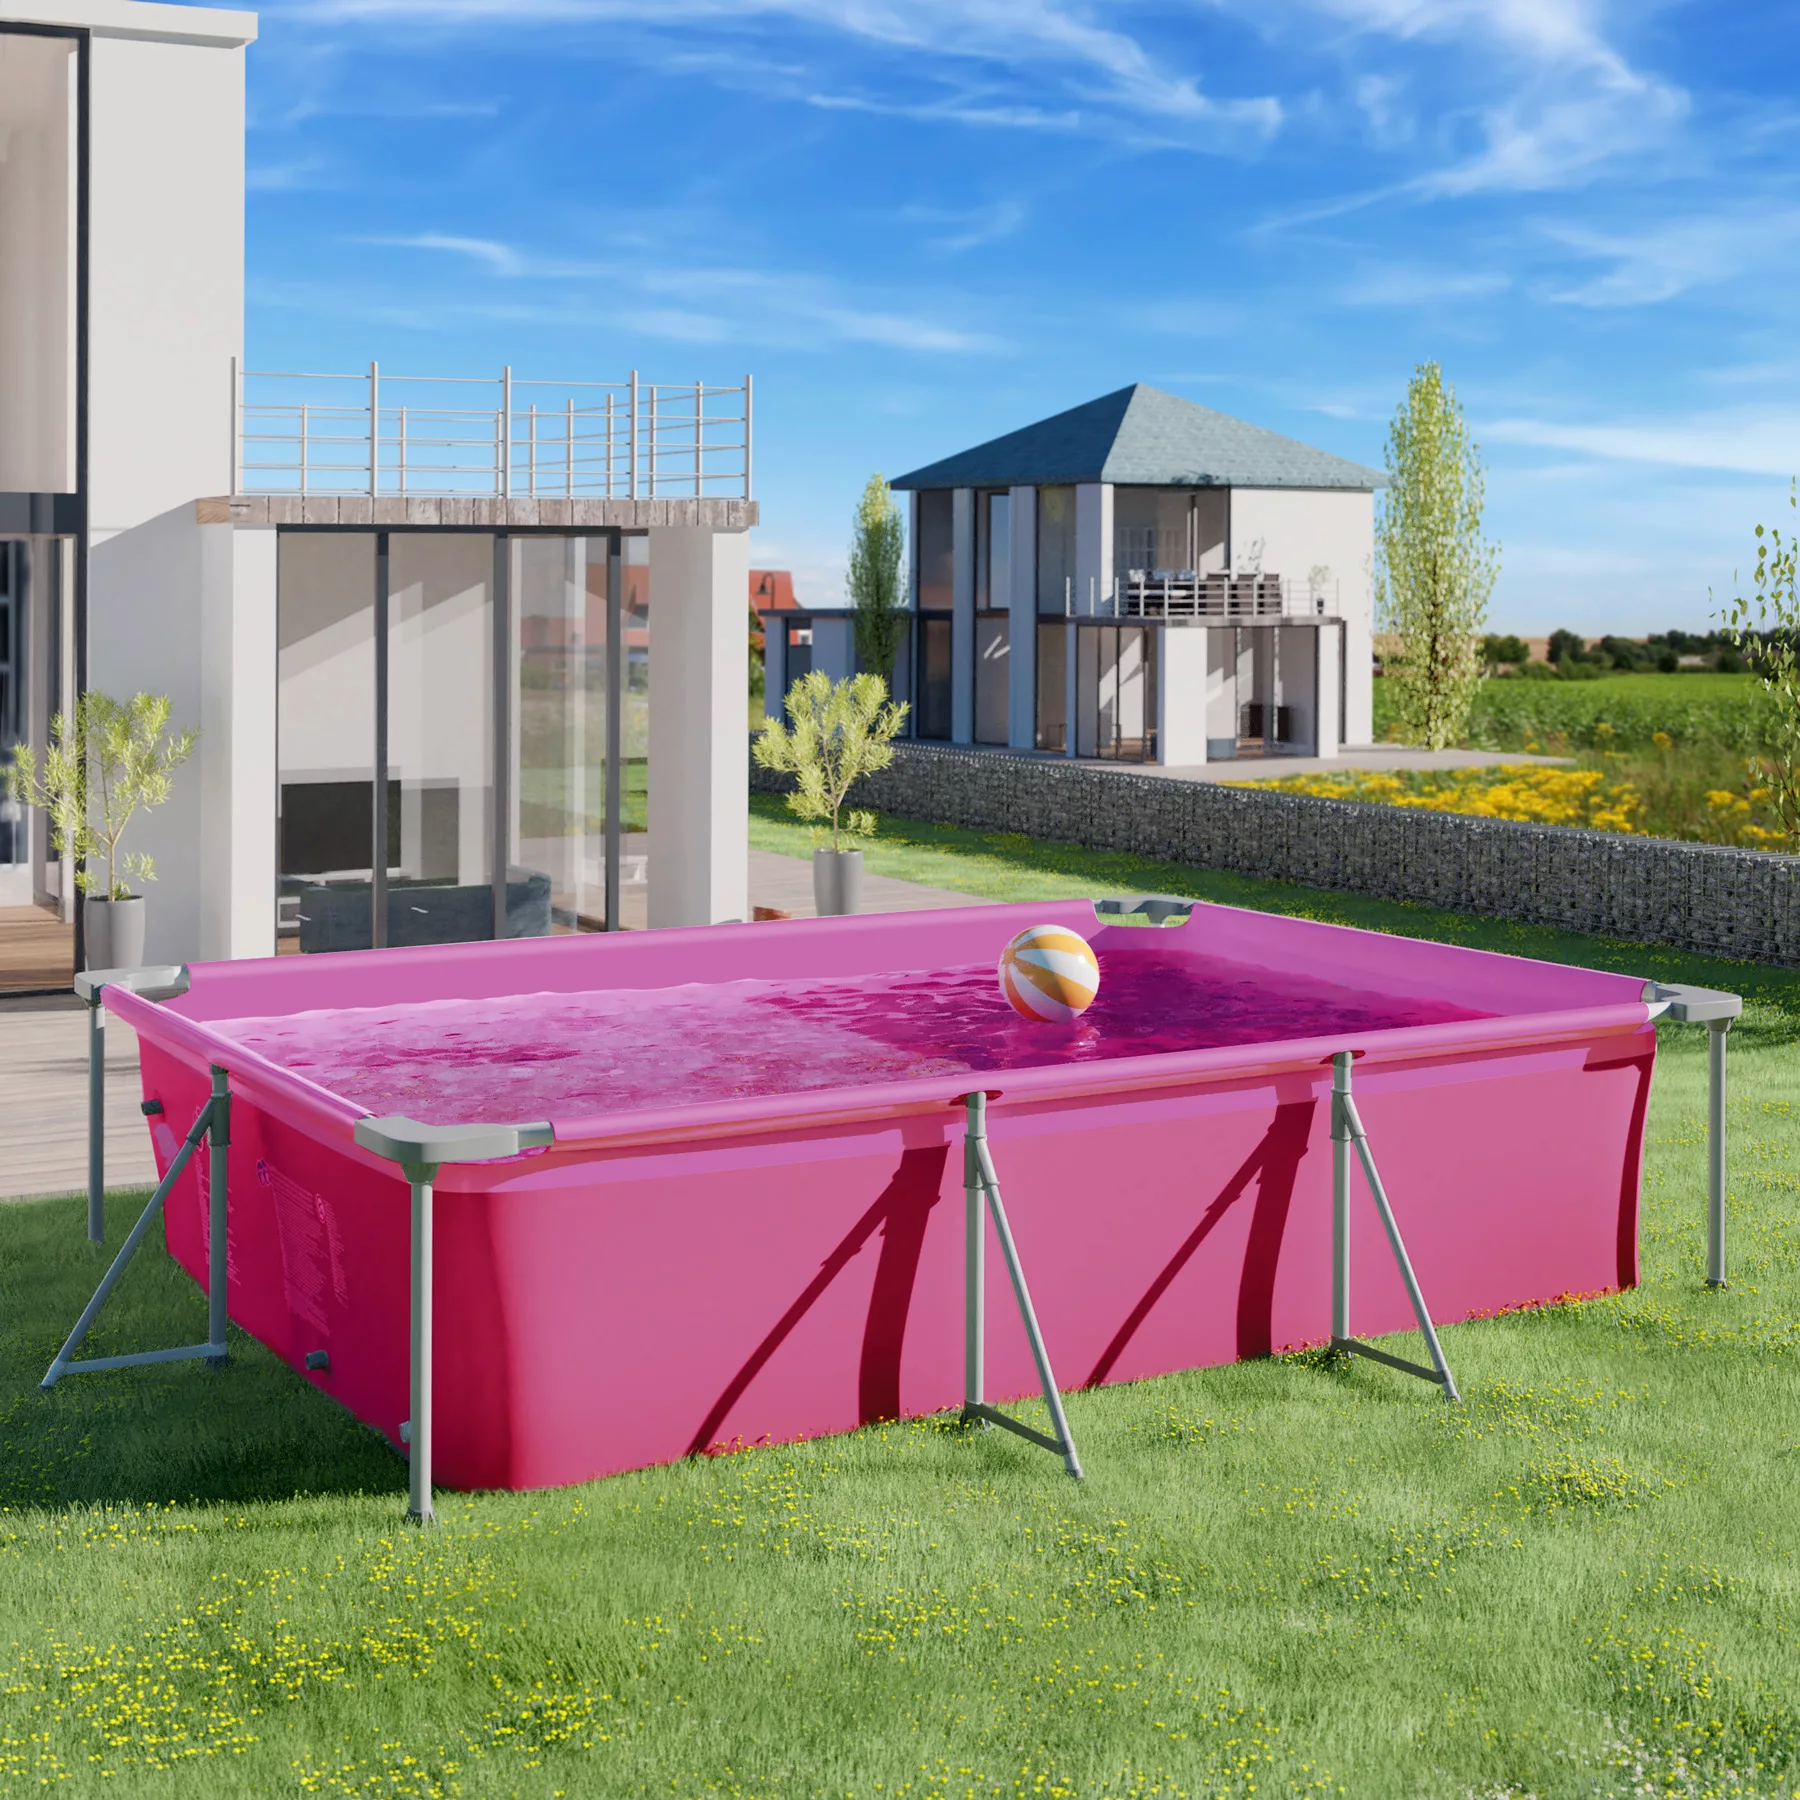 Swimming Pool rechteckig mit Filterpumpe 300 x 207 x 70 cm - pink günstig online kaufen